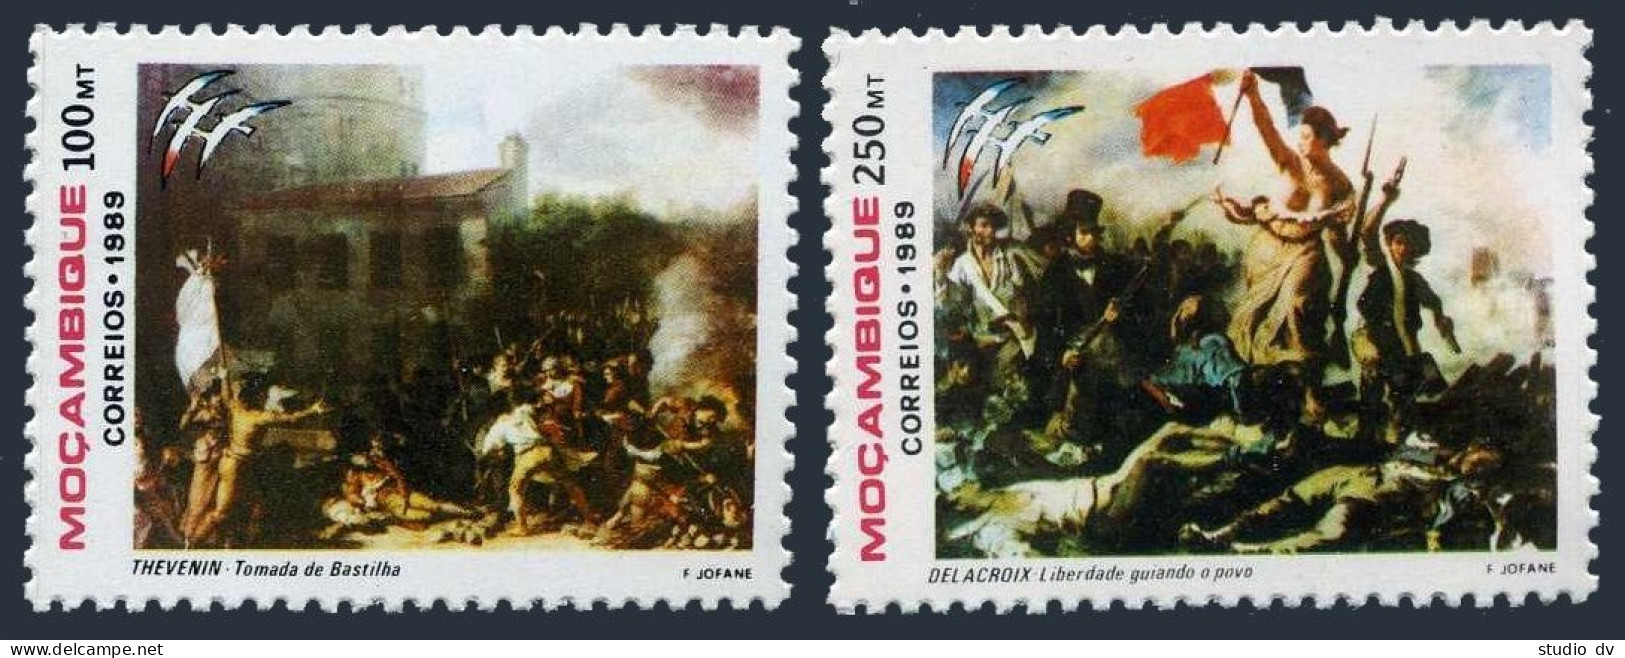 Mozambique 1070-1071,MNH.Michel 1153-1154. PHILEXFRANCE-1989.French Revolution. - Mozambique